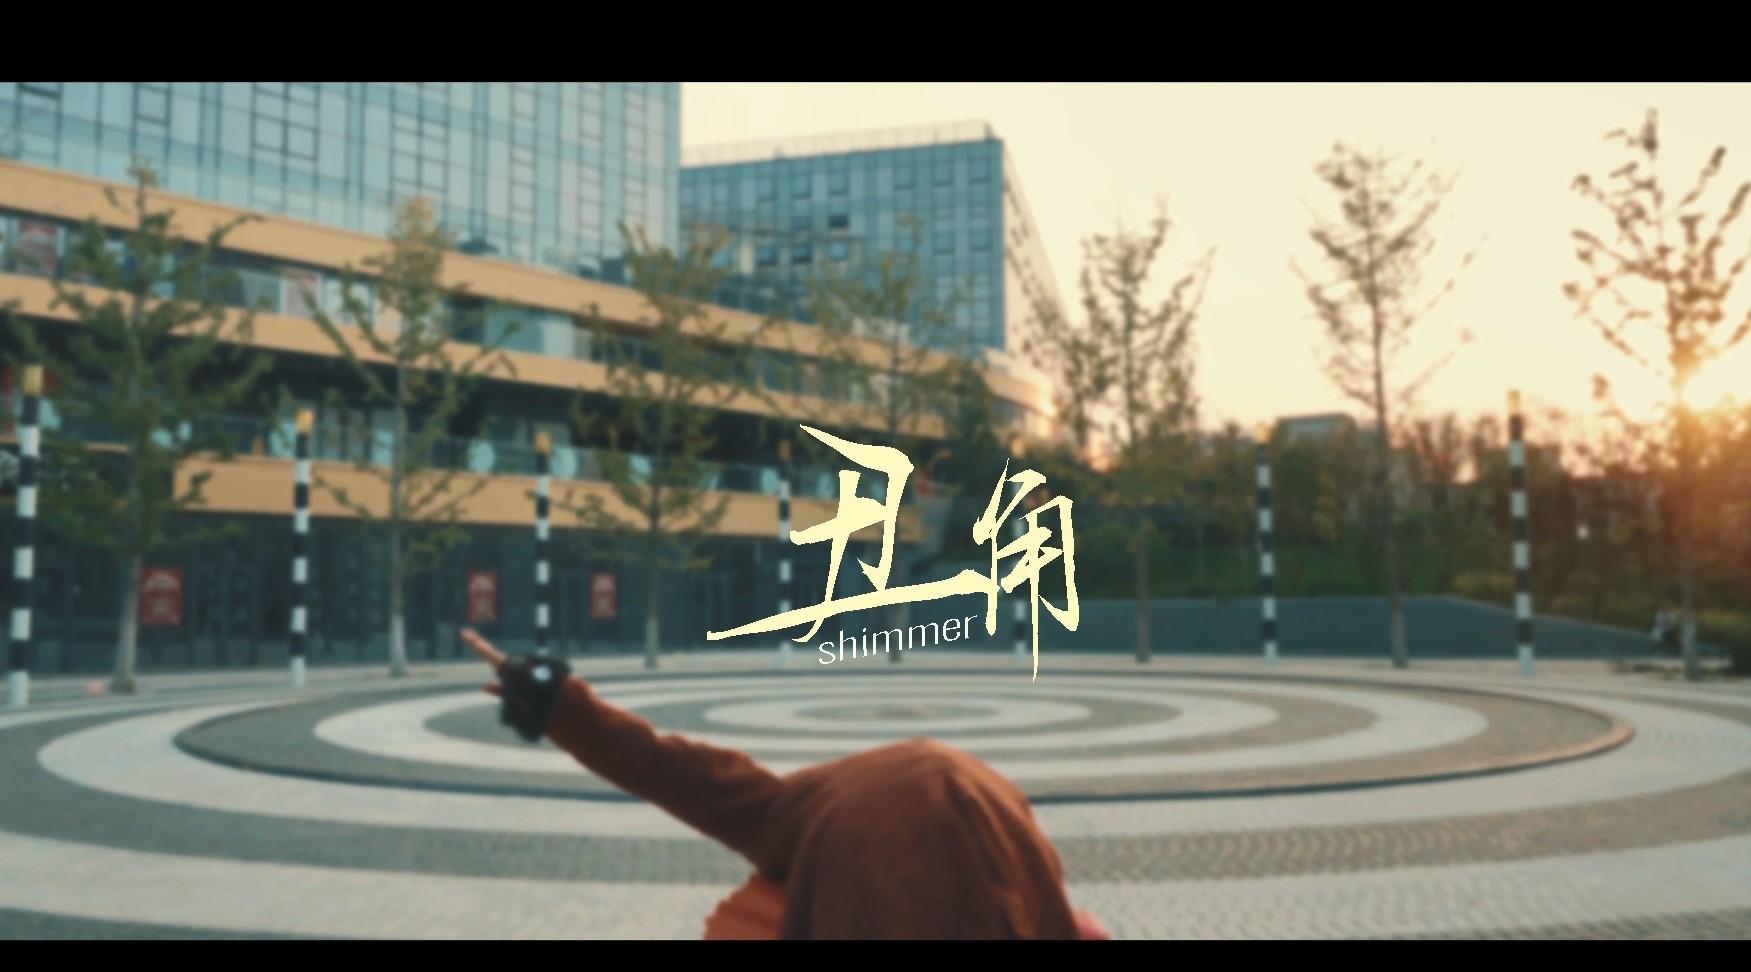 北京印刷学院摄影专业剧情短片《丑角》